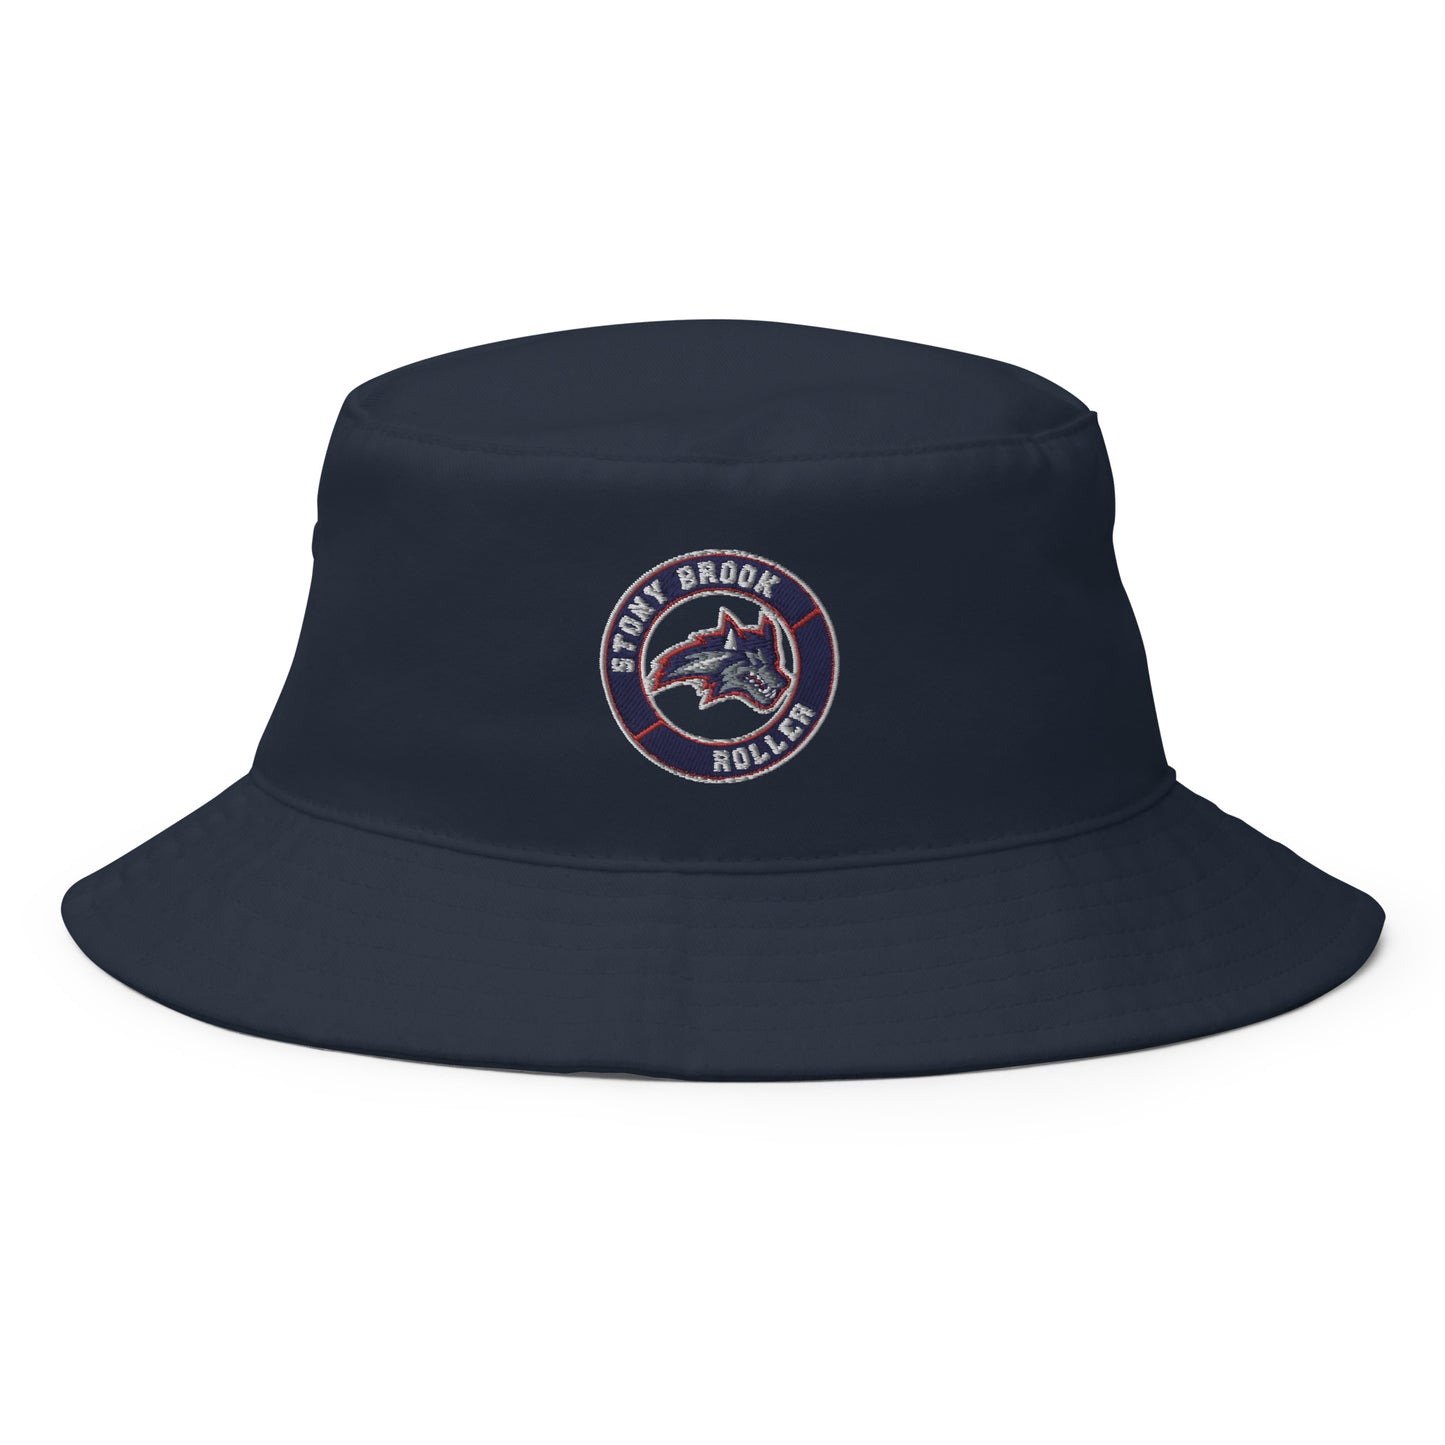 Stony Brook Bucket Hat